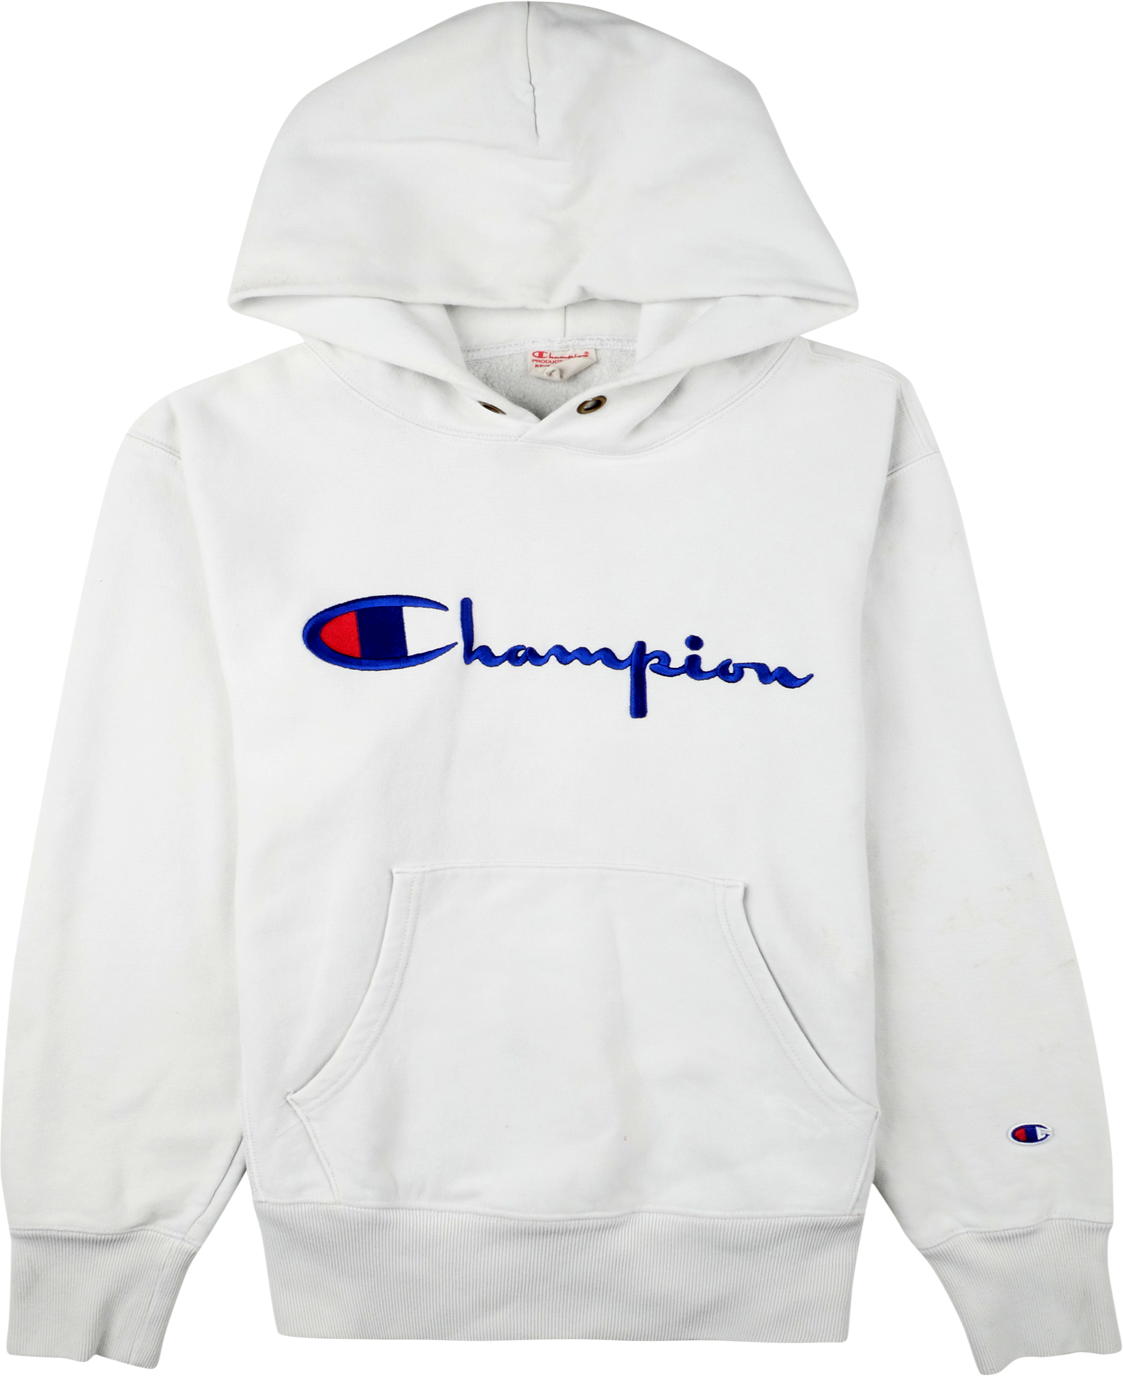 Champion Kapuzen Pullover weiß